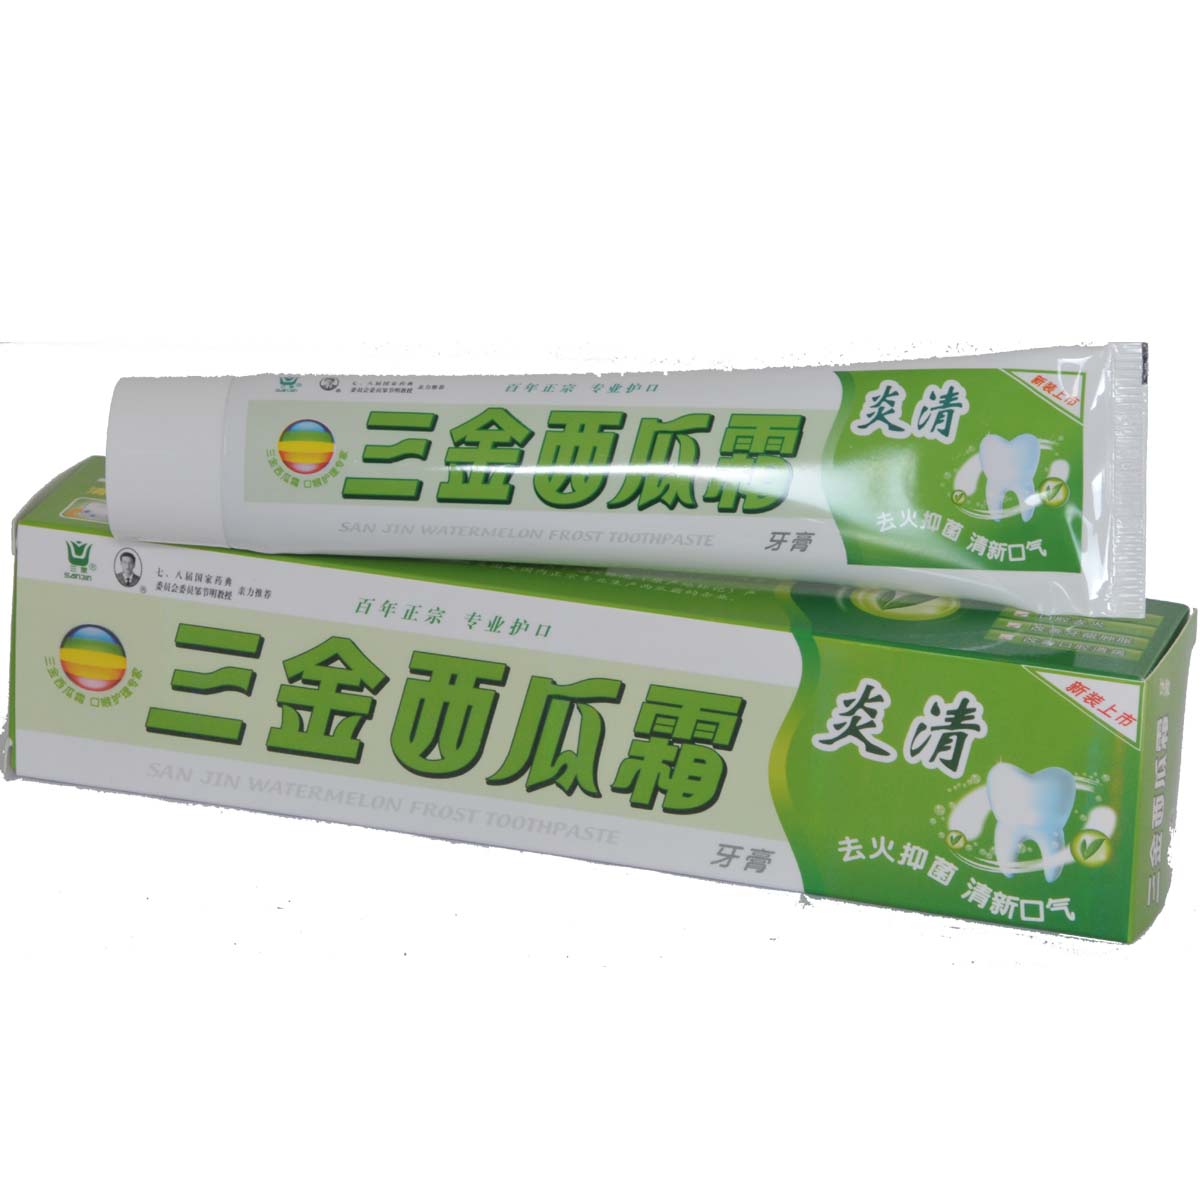 三金西瓜霜-炎清牙膏招商